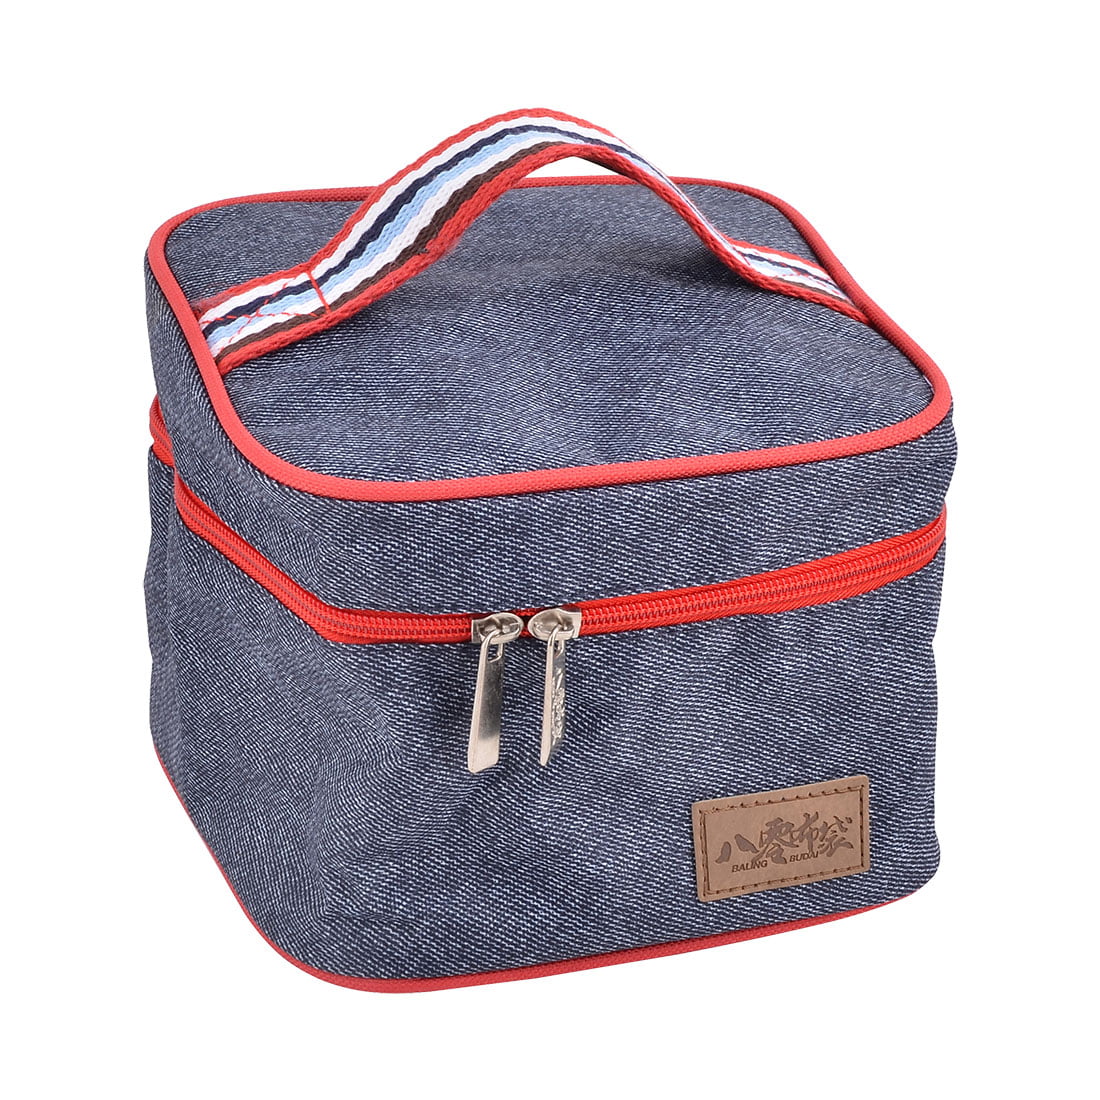 Home Zipper Closure Heat Retaining Tote Cooler Pouch Handbag Bag Navy Blue Red - www.bagsaleusa.com